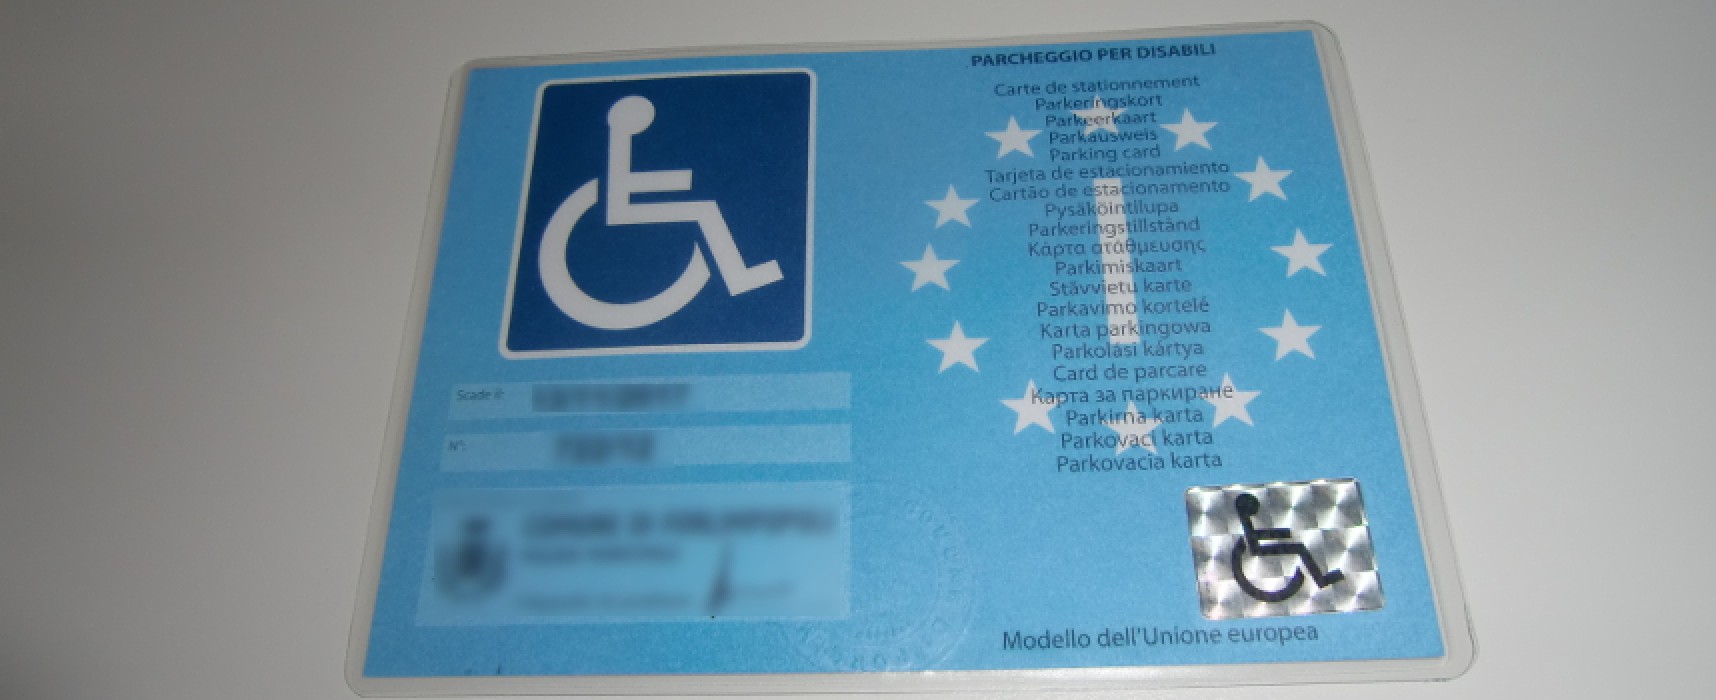 Contrassegni per disabili, dal 15 settembre in vigore solo quelli europei / DETTAGLI per la sostituzione